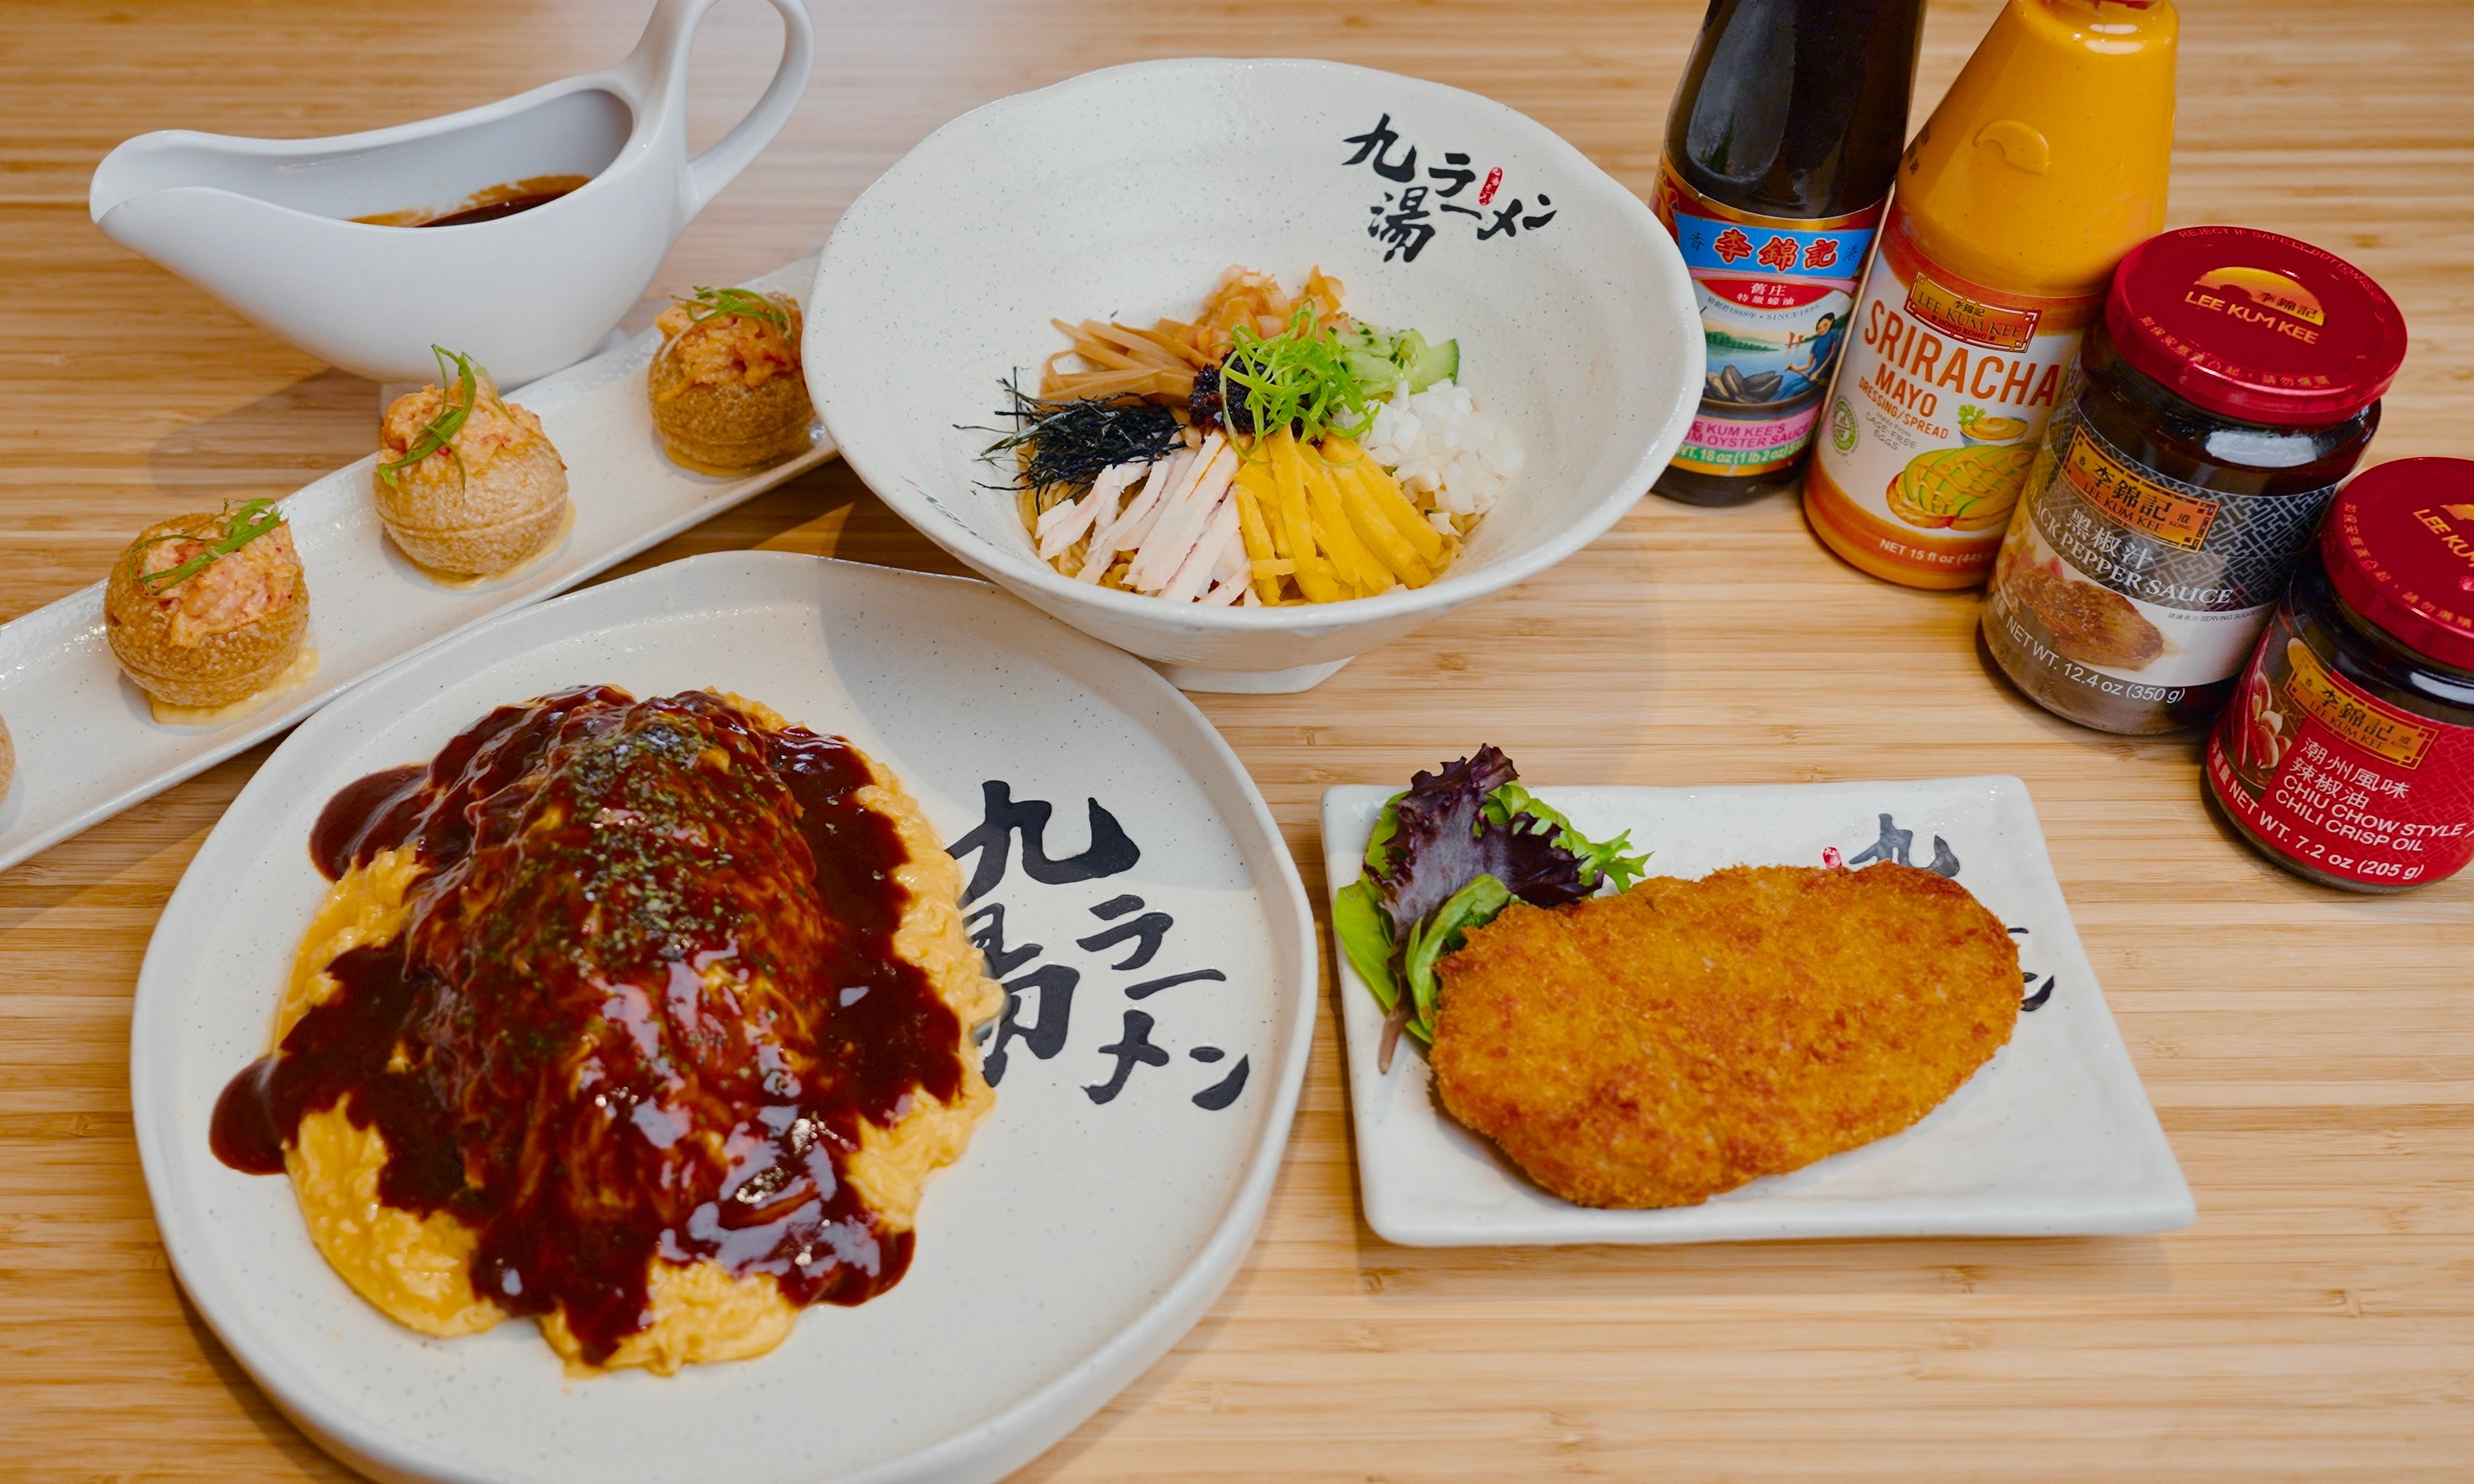 Hong Kong’s Lee Kum Kee sauces get a fresh spin in three new menu items at US ramen chain Kyuramen’s restaurants. Photo: Kyuramen